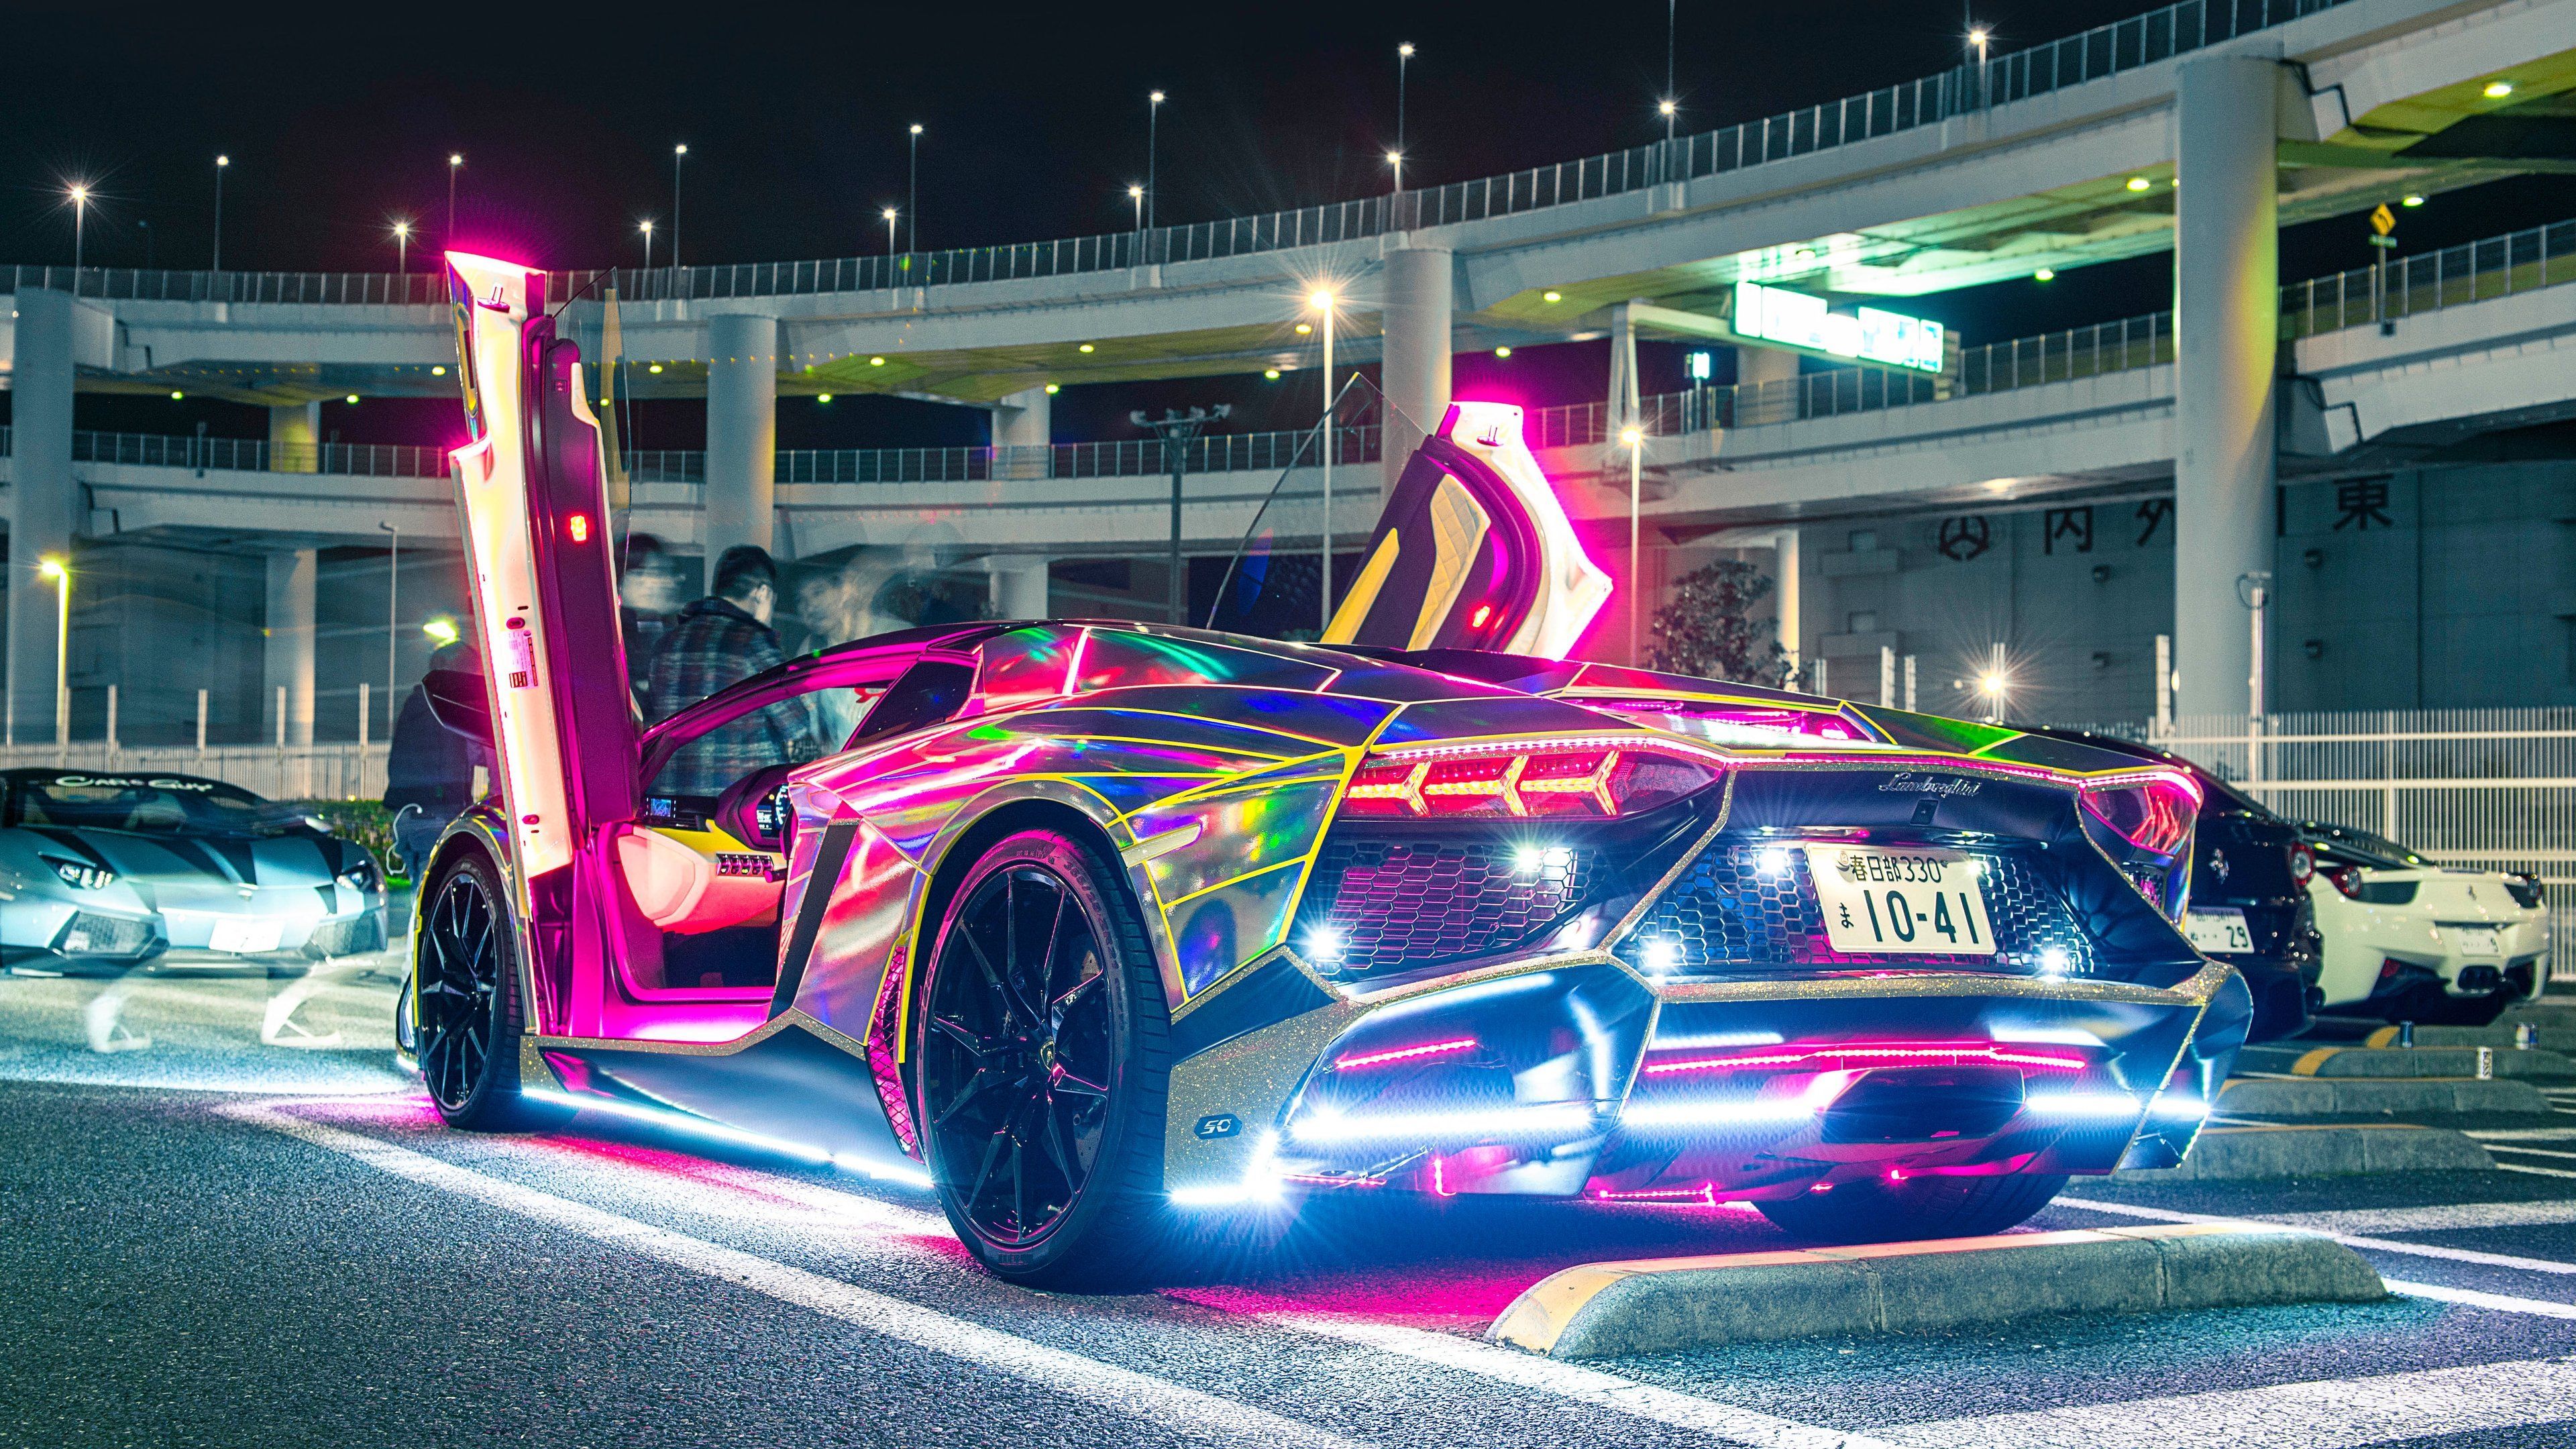 Neon Car Images - Free Download on Freepik